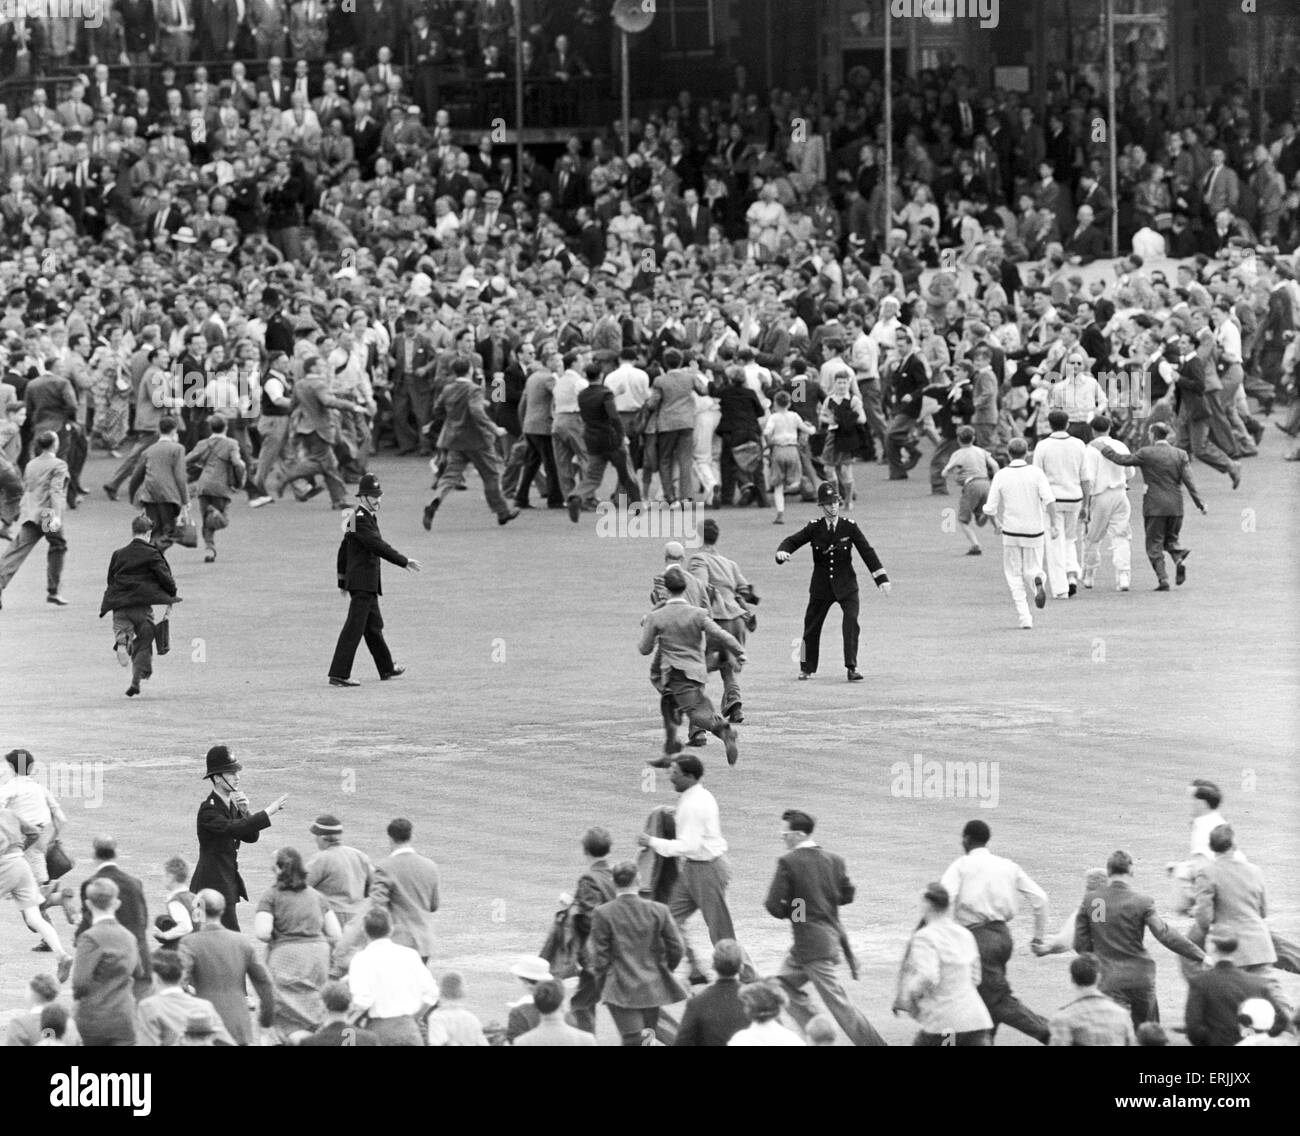 England v Australia quinta prueba coinciden en el Oval de la Ceniza. Las multitudes rush en el tono al final, que celebran de Inglaterra gana 1-0 en la serie. 19 de agosto de 1953. Foto de stock